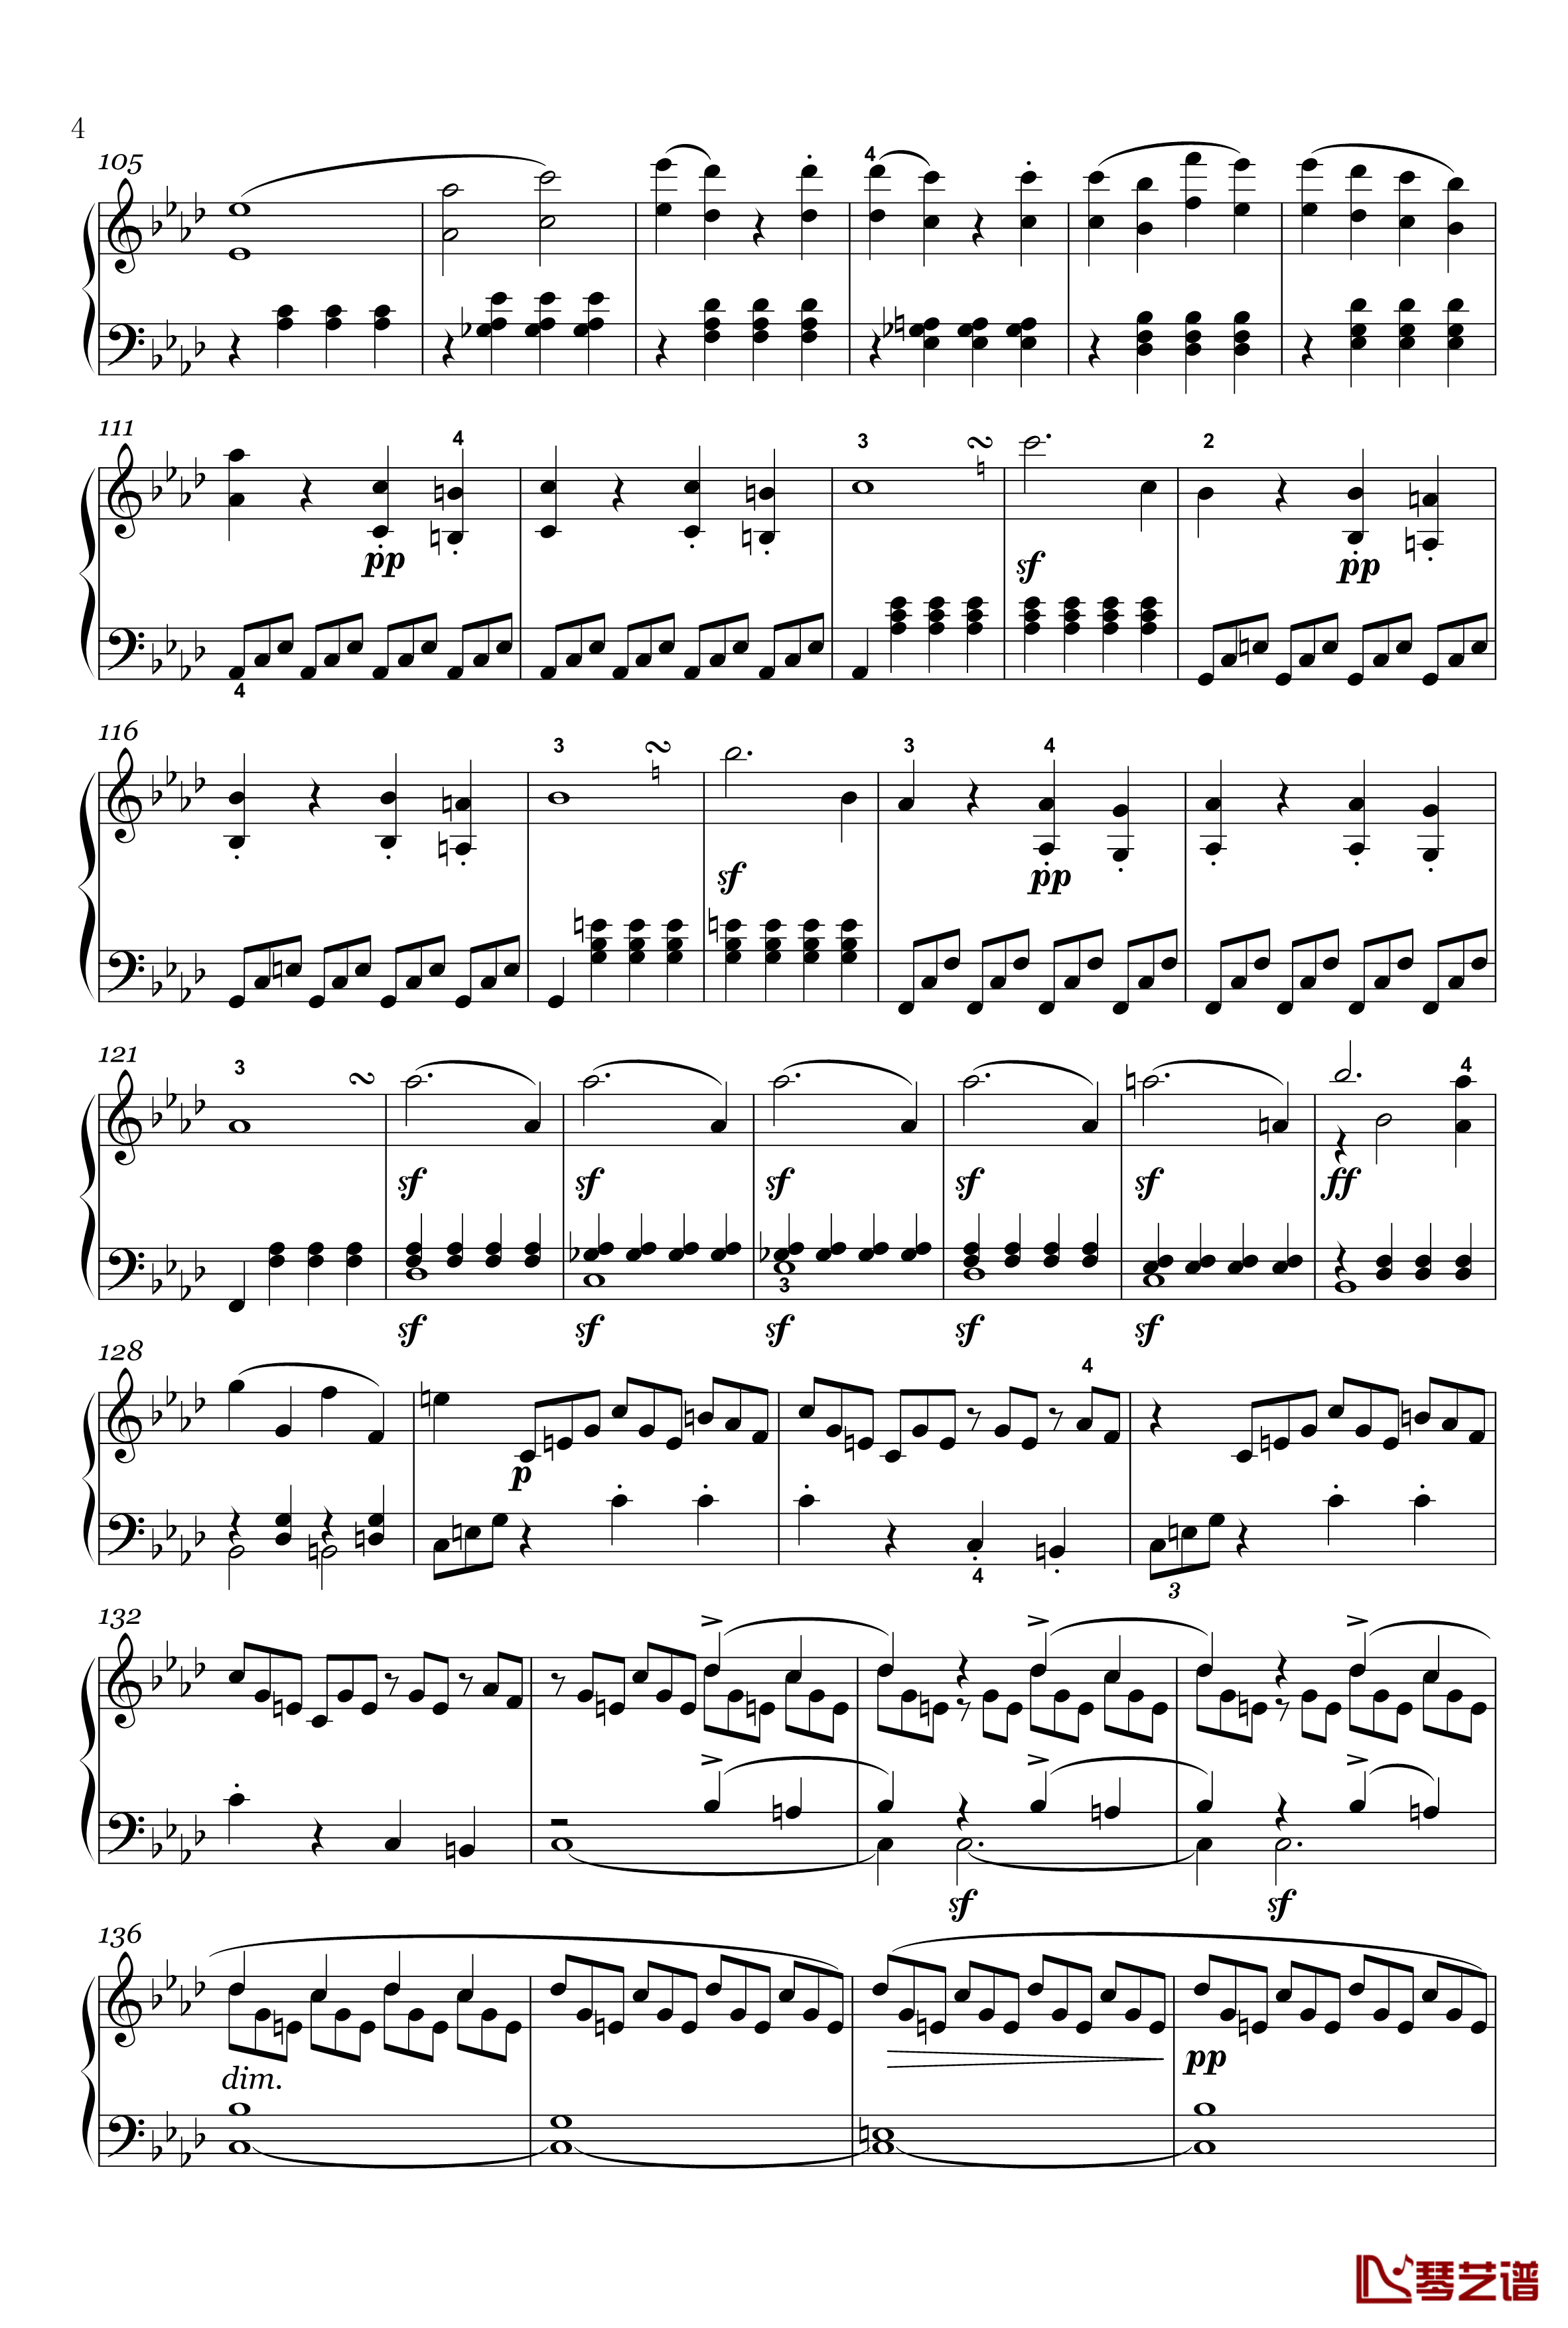 奏鸣曲钢琴谱-op-2-1-第四乐章-贝多芬-beethoven4